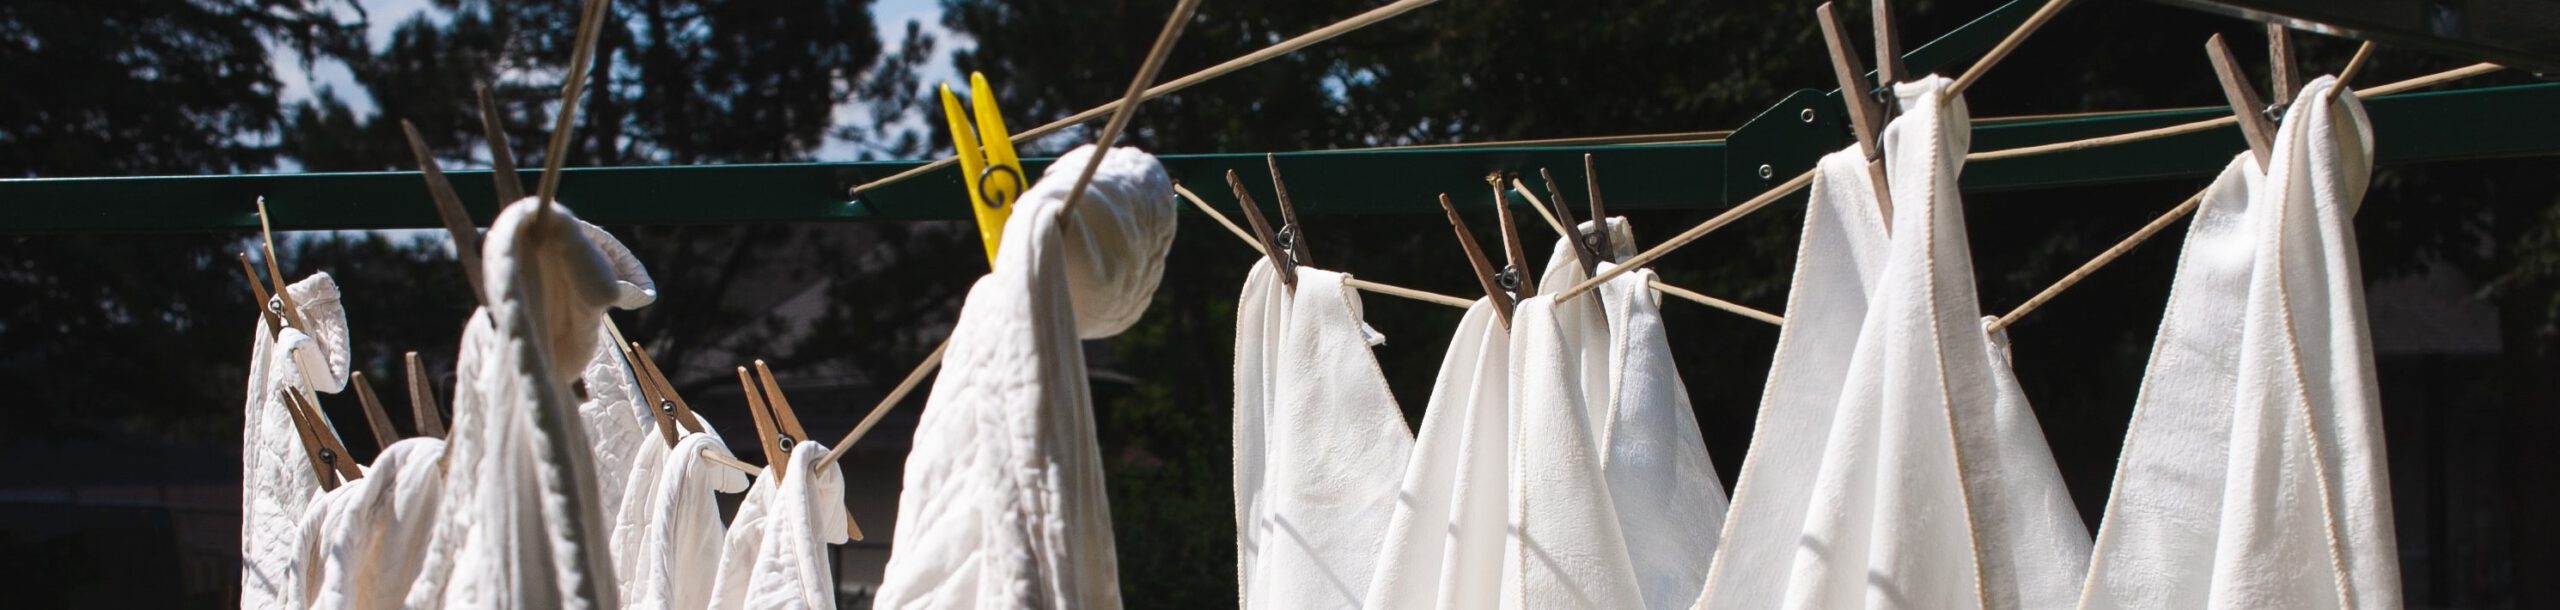 Weiße gebeizte Wäsche, die auf einer Wäscheleine hängt